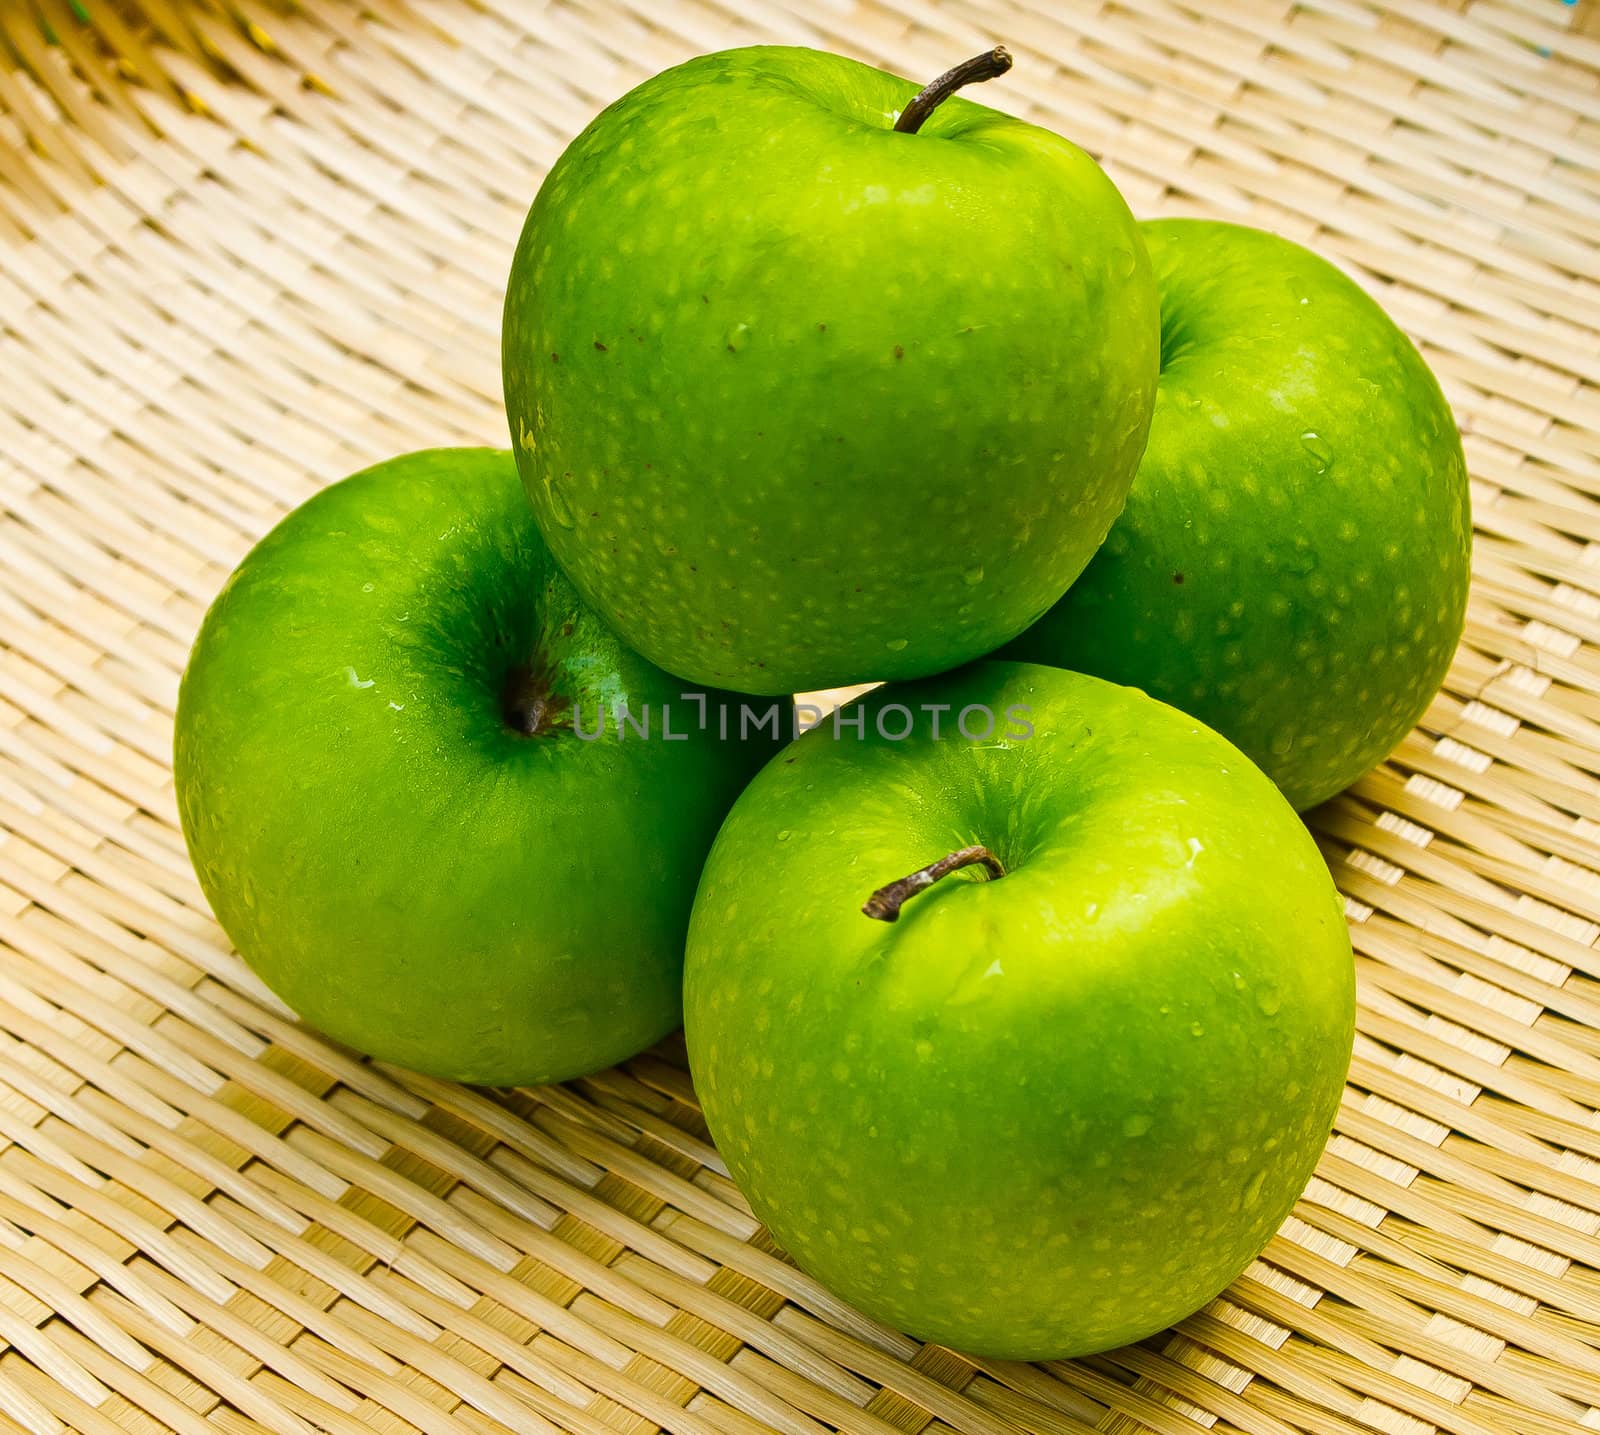 Green apple on basketwork by gjeerawut